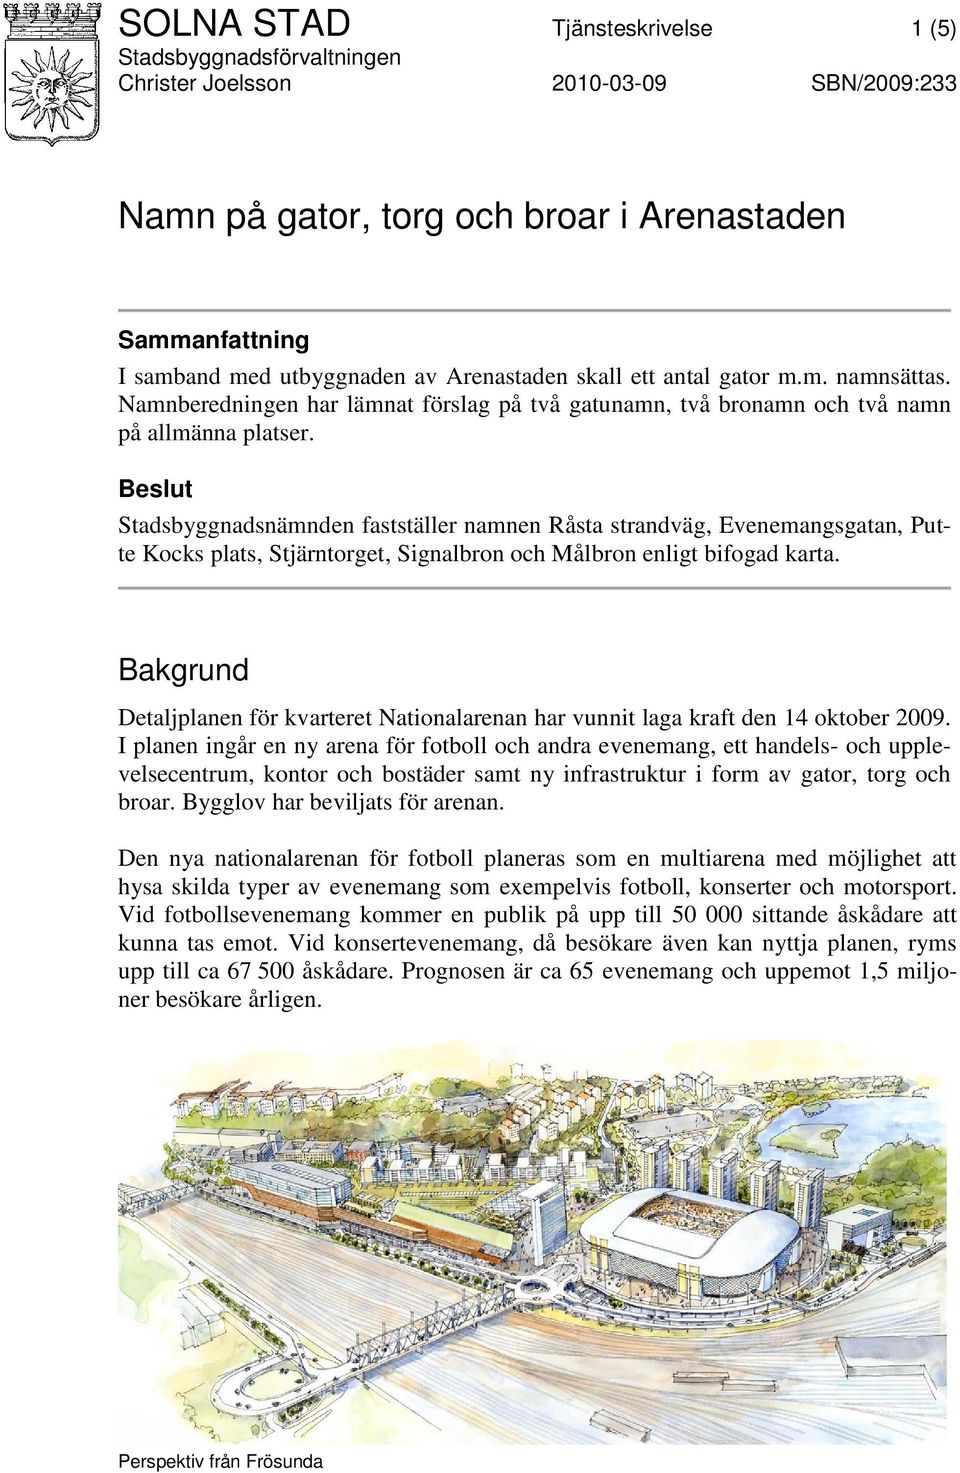 Beslut Stadsbyggnadsnämnden fastställer namnen Råsta strandväg, Evenemangsgatan, Putte Kocks plats, Stjärntorget, Signalbron och Målbron enligt bifogad karta.